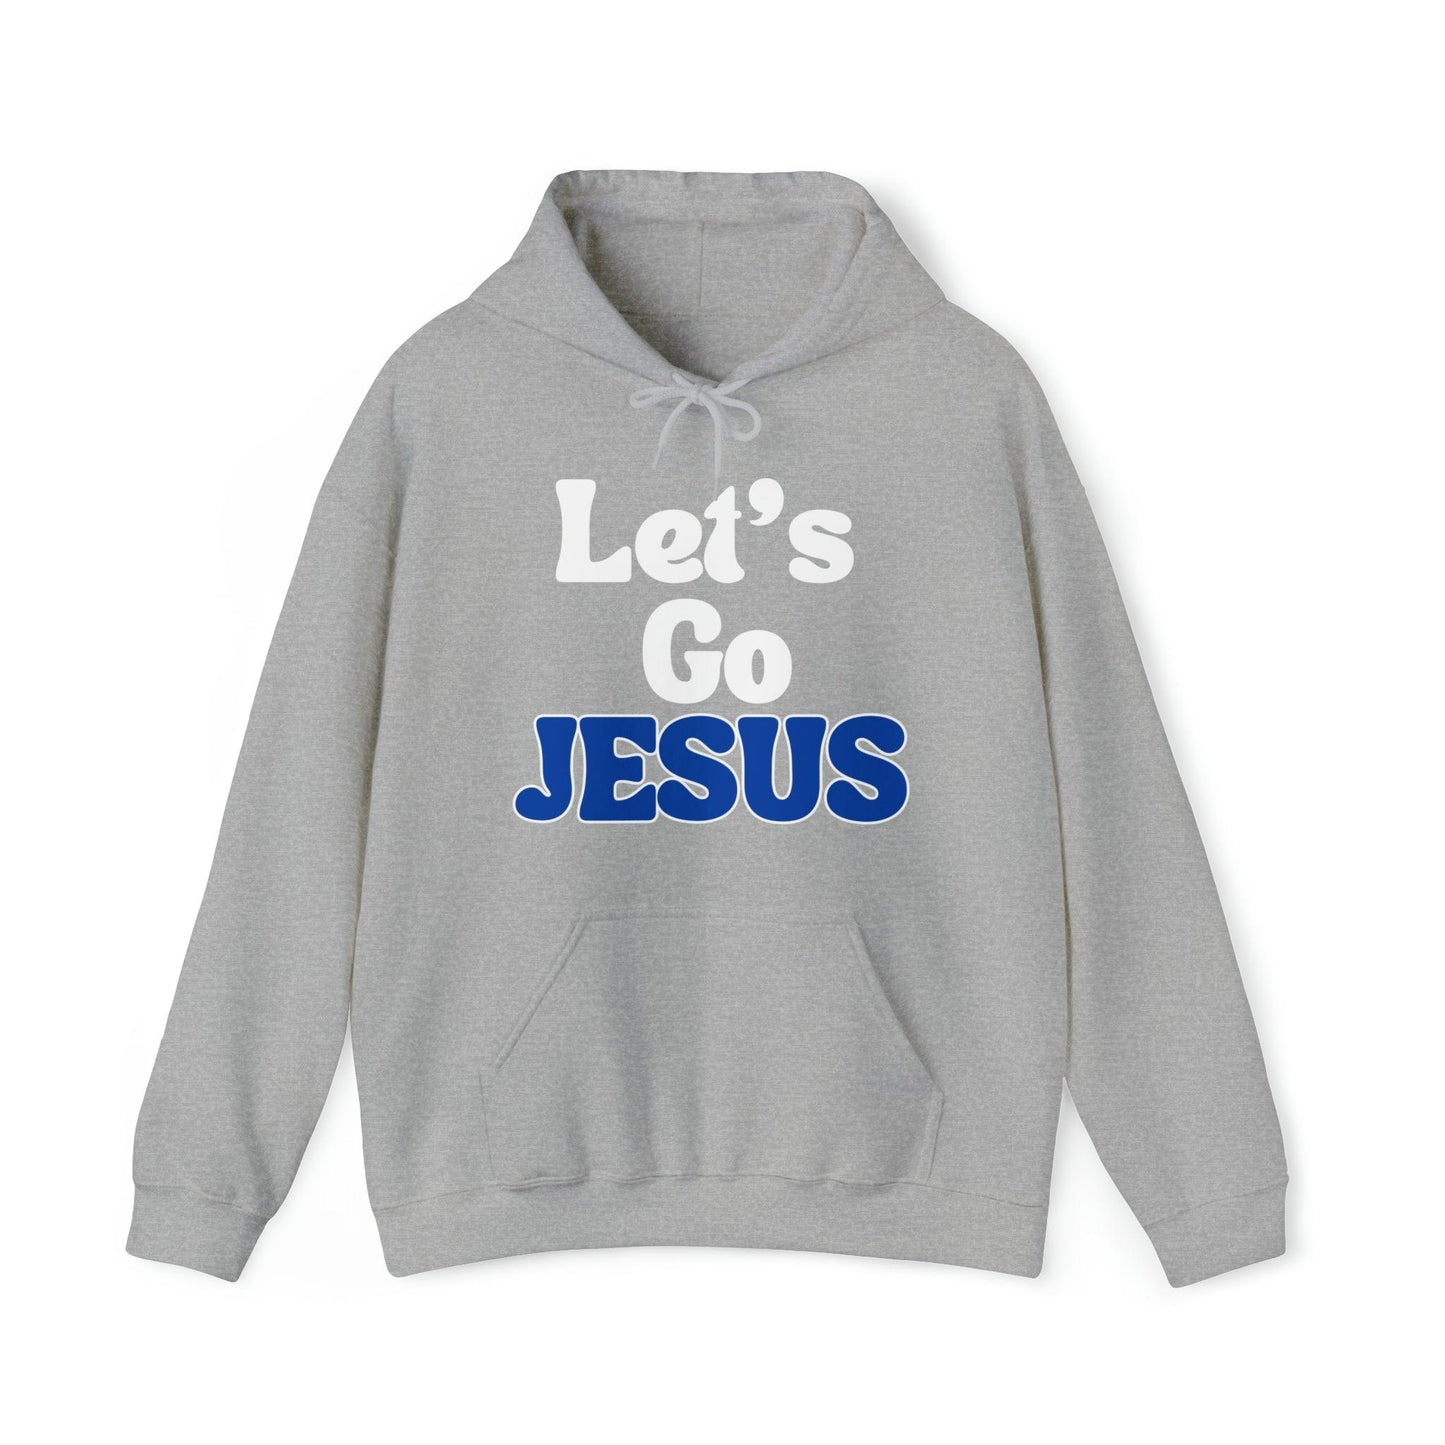 Funny Christian Shirt Let's Go Jesus Hooded Sweatshirt Christian Gift Trendy Christian Sweatshirt Religious Sweatshirt Jesus Hoodie Faith Shirt - Giftsmojo